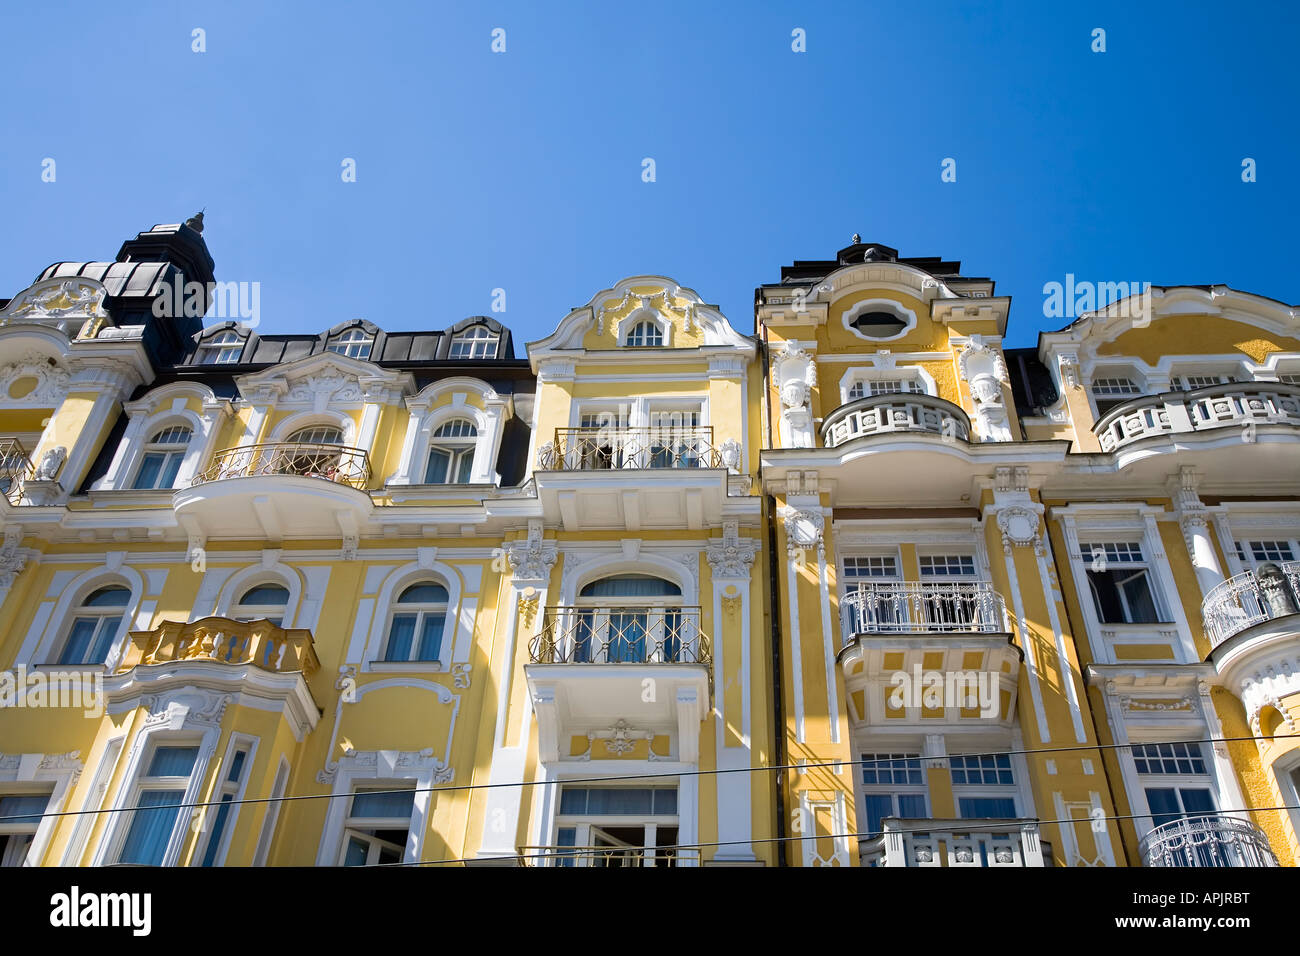 Architektur mit Balkonen und markanten weißen und gelben Putz Marianske Lazne Tschechien Stockfoto